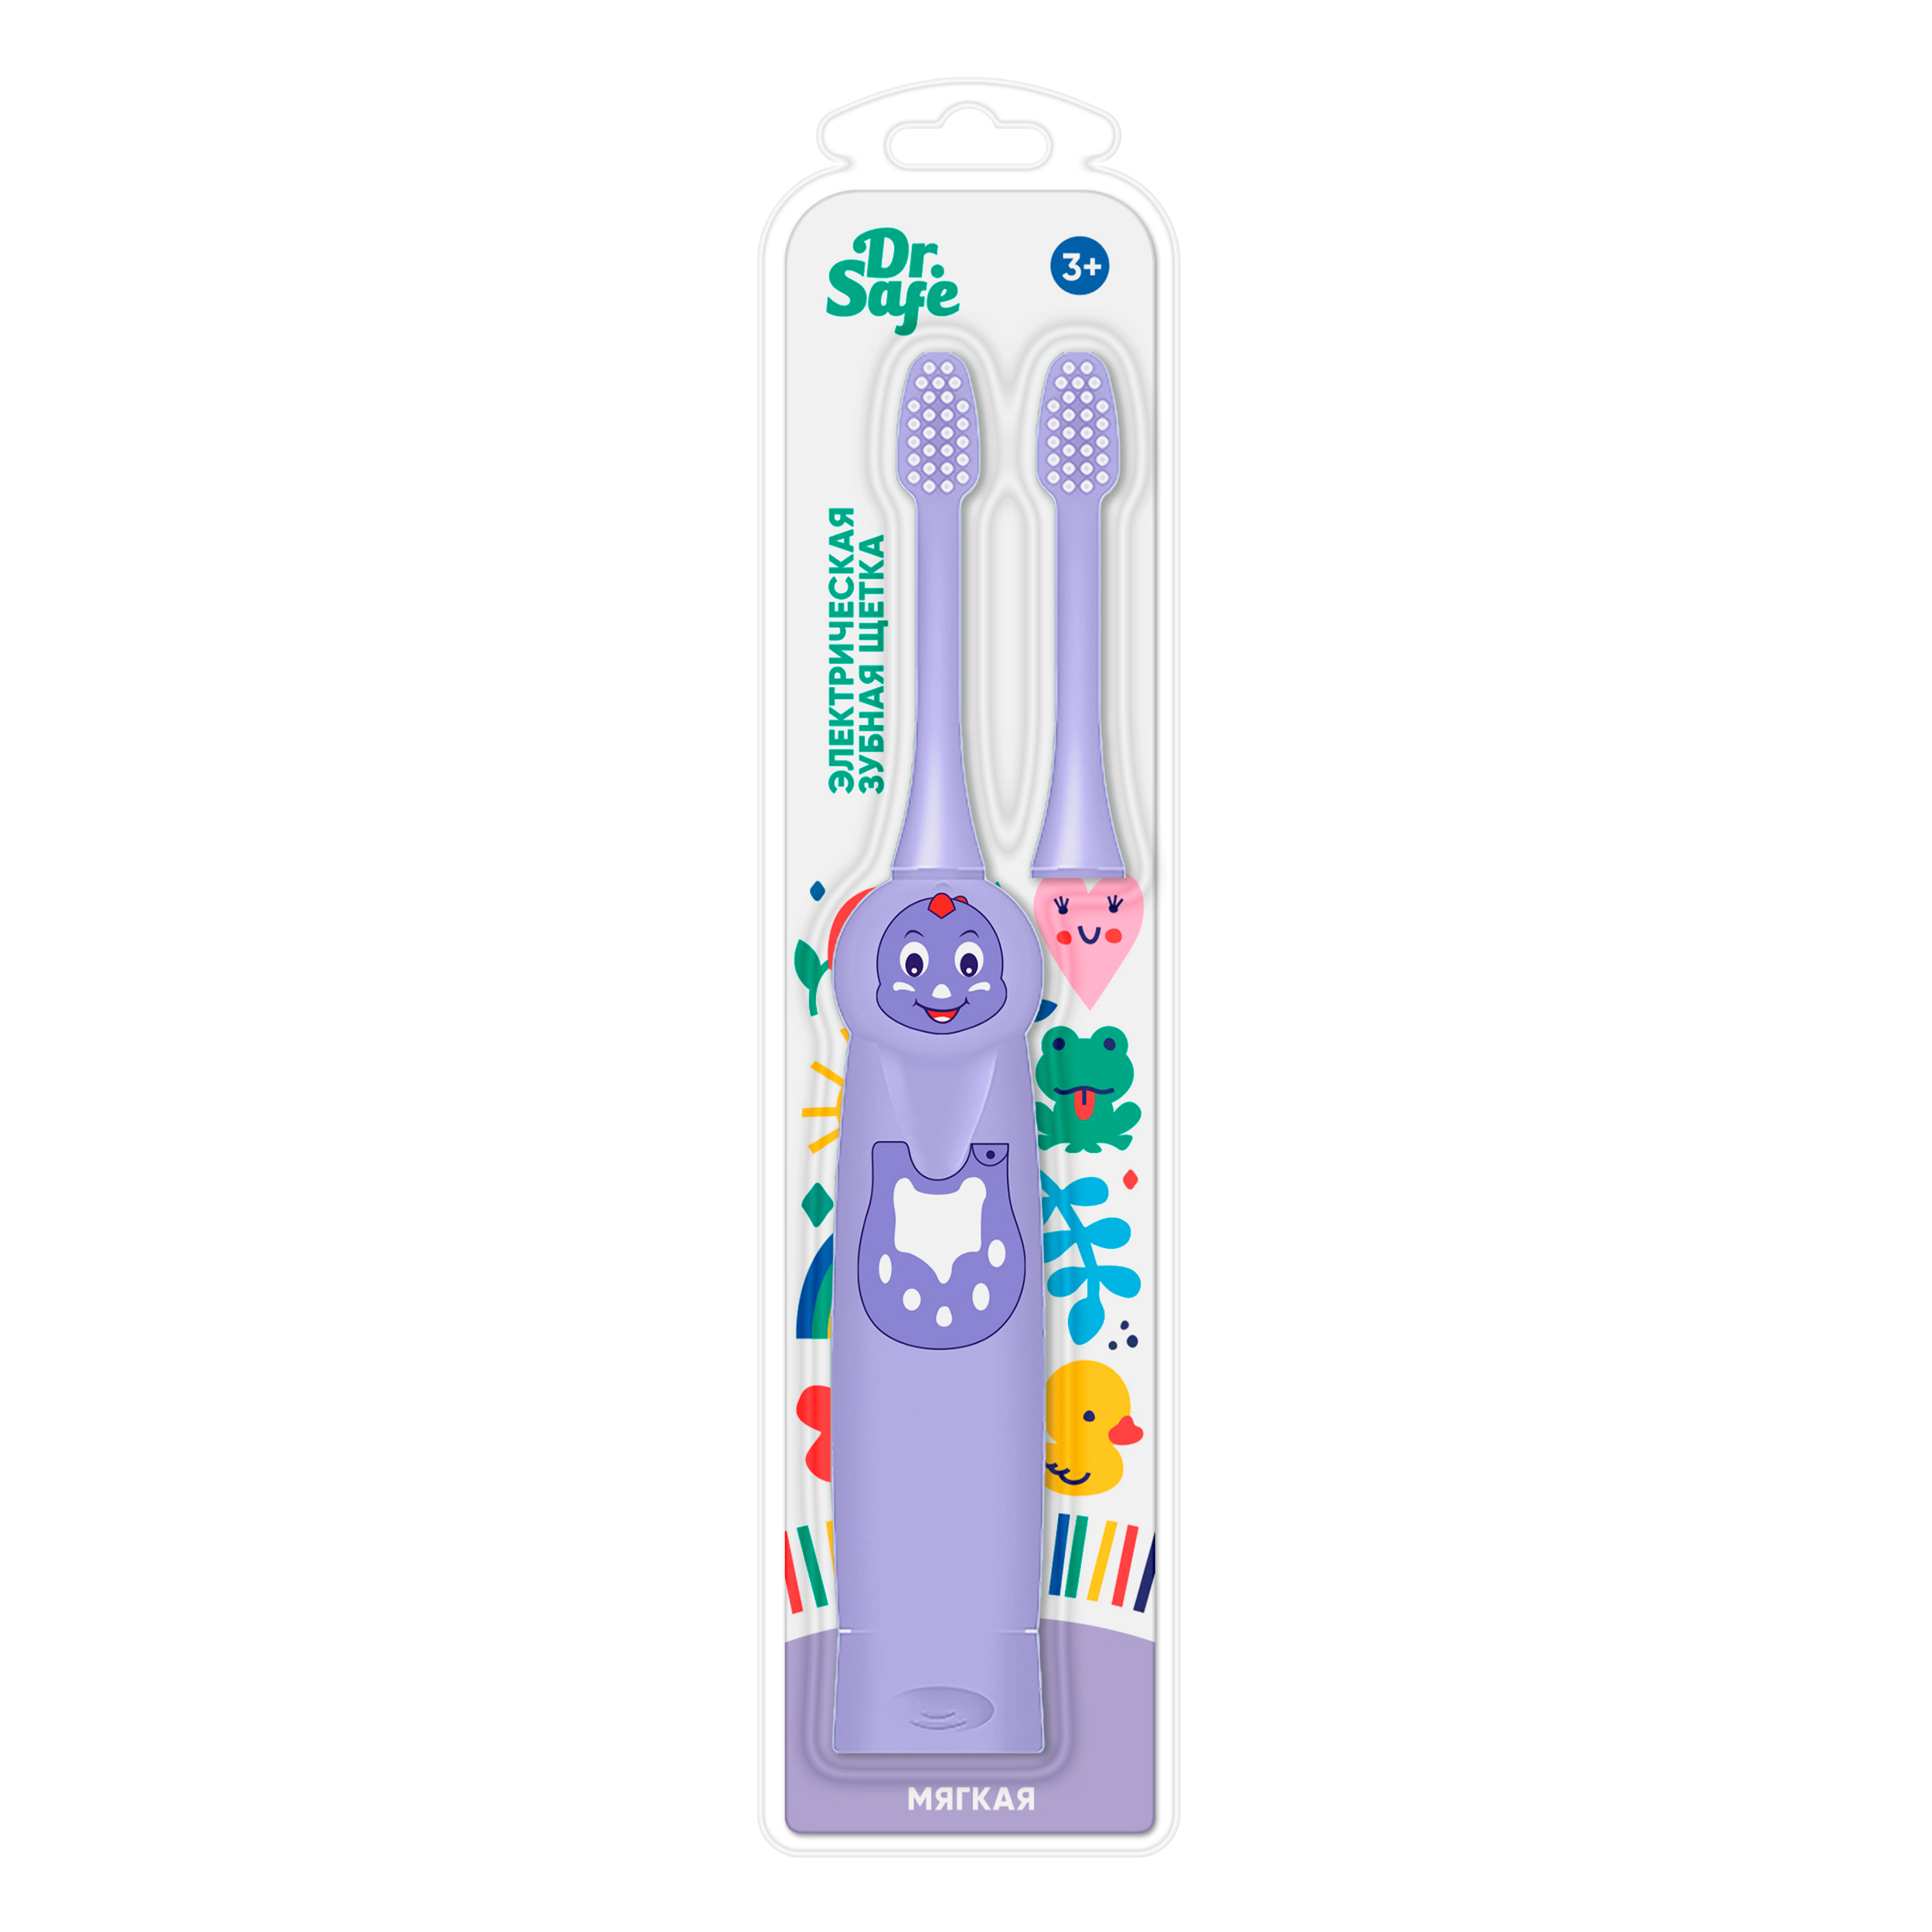 Электрическая зубная щетка Dr.Safe Дракон детская, фиолетовая chicco набор детская расческа и щётка с натуральными щетинками голубой